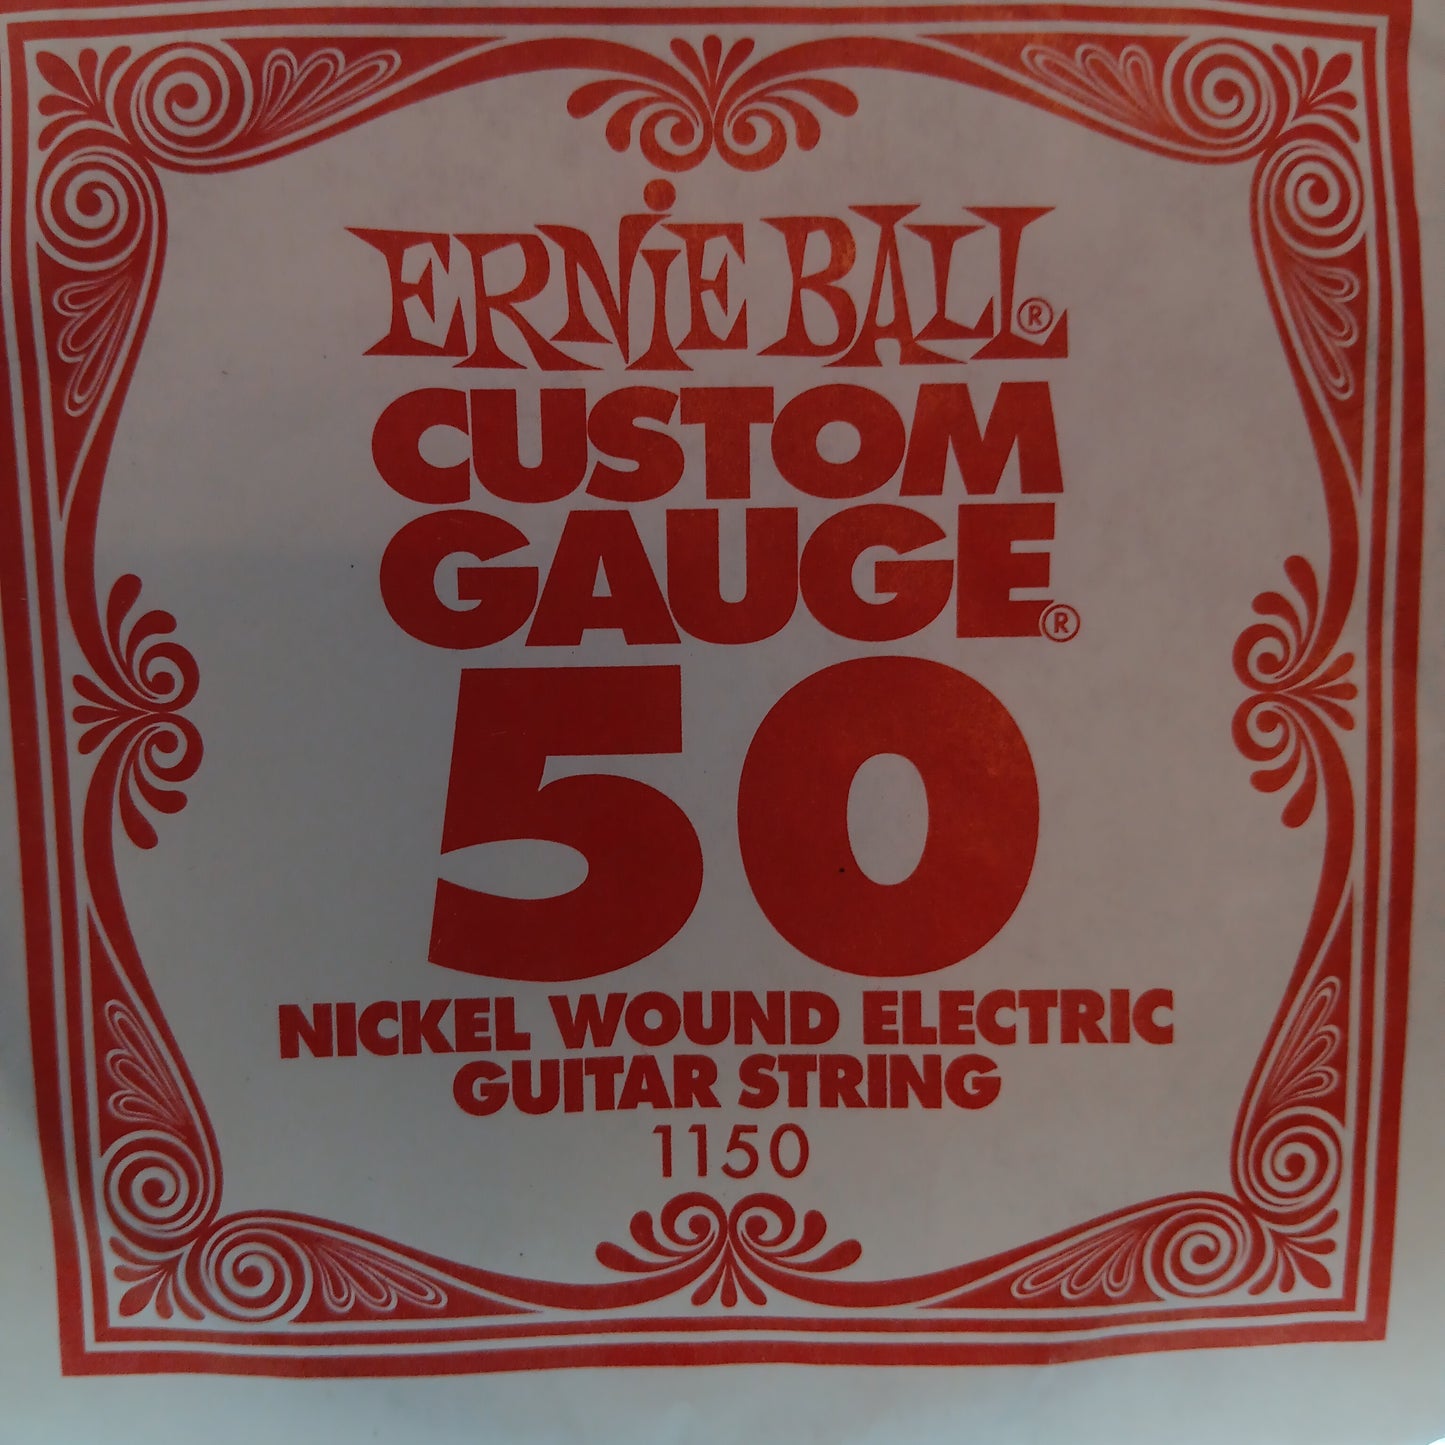 Ernie Ball Custom Gauge Nickel Wound Single Strings 1150/ 50 Gauge